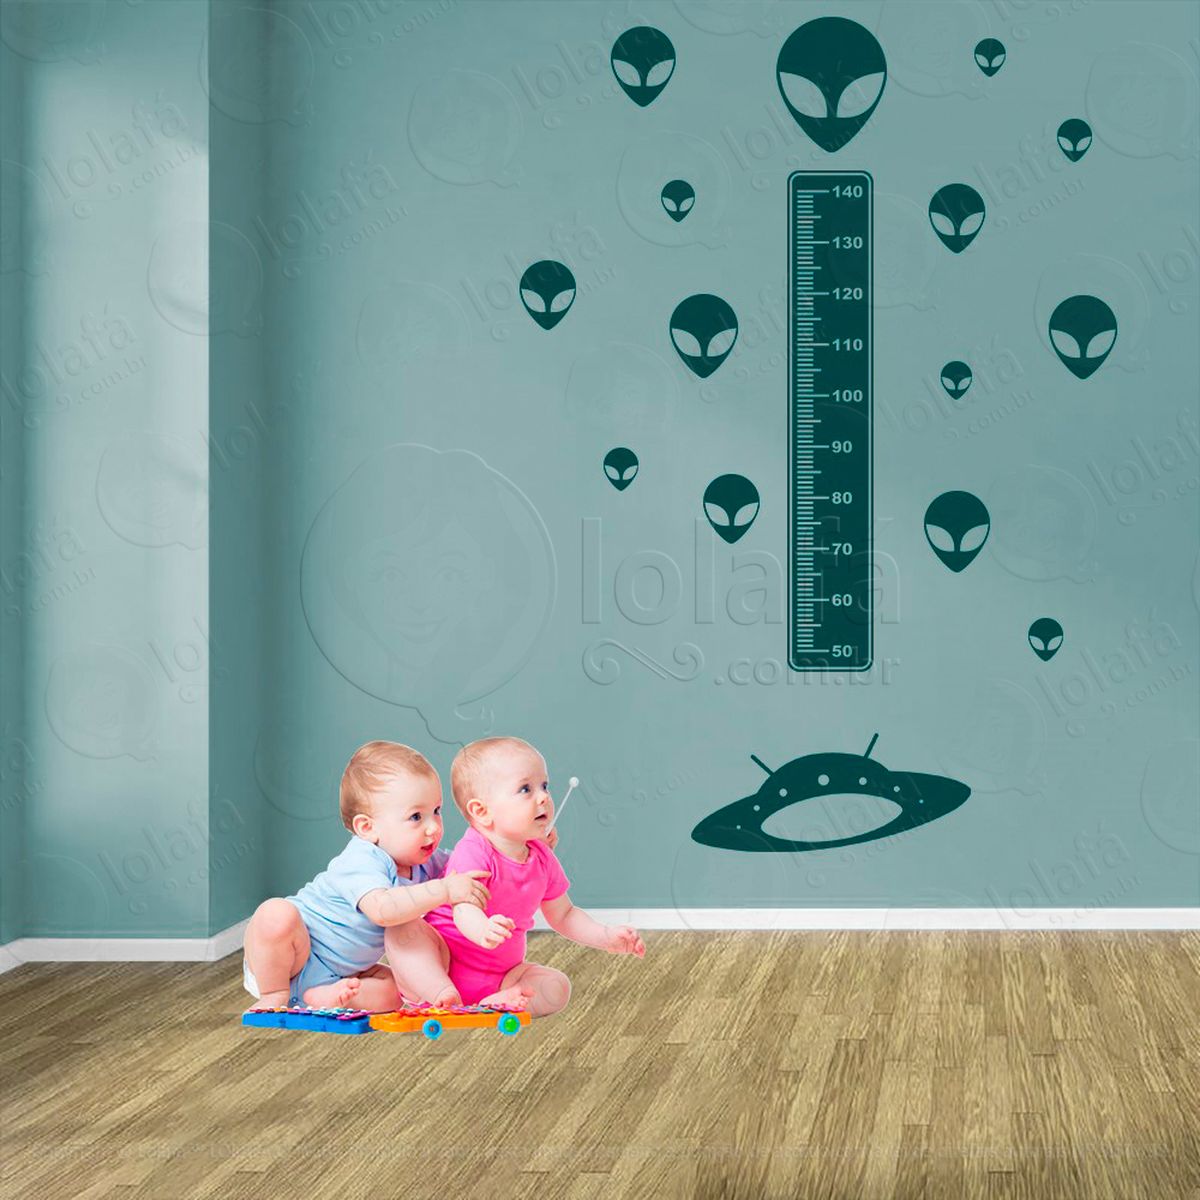 nave espacial e aliens adesivo régua de crescimento infantil, medidor de altura para quarto, porta e parede - mod:1275